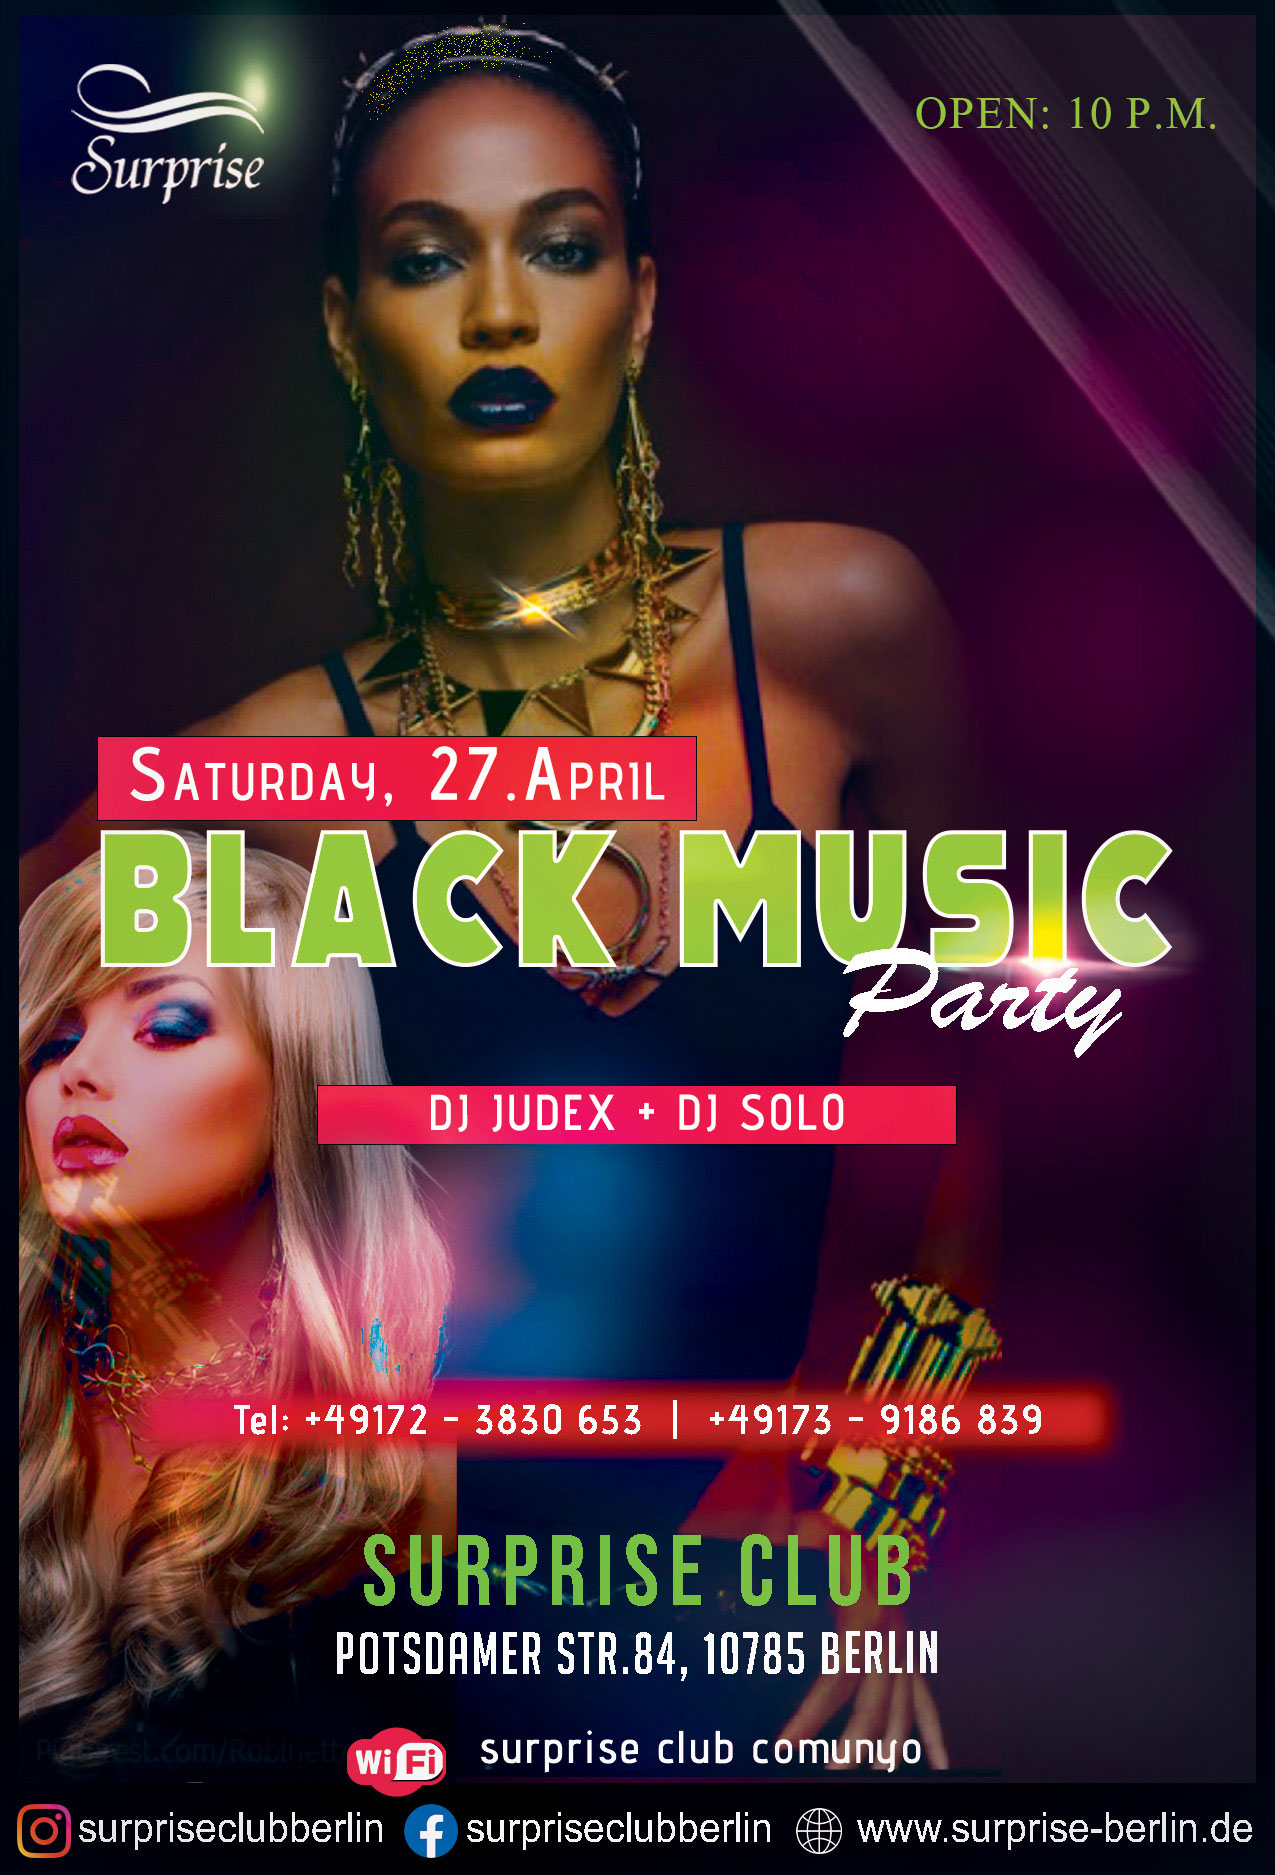 Black music party in Berlin - Party in Berlin